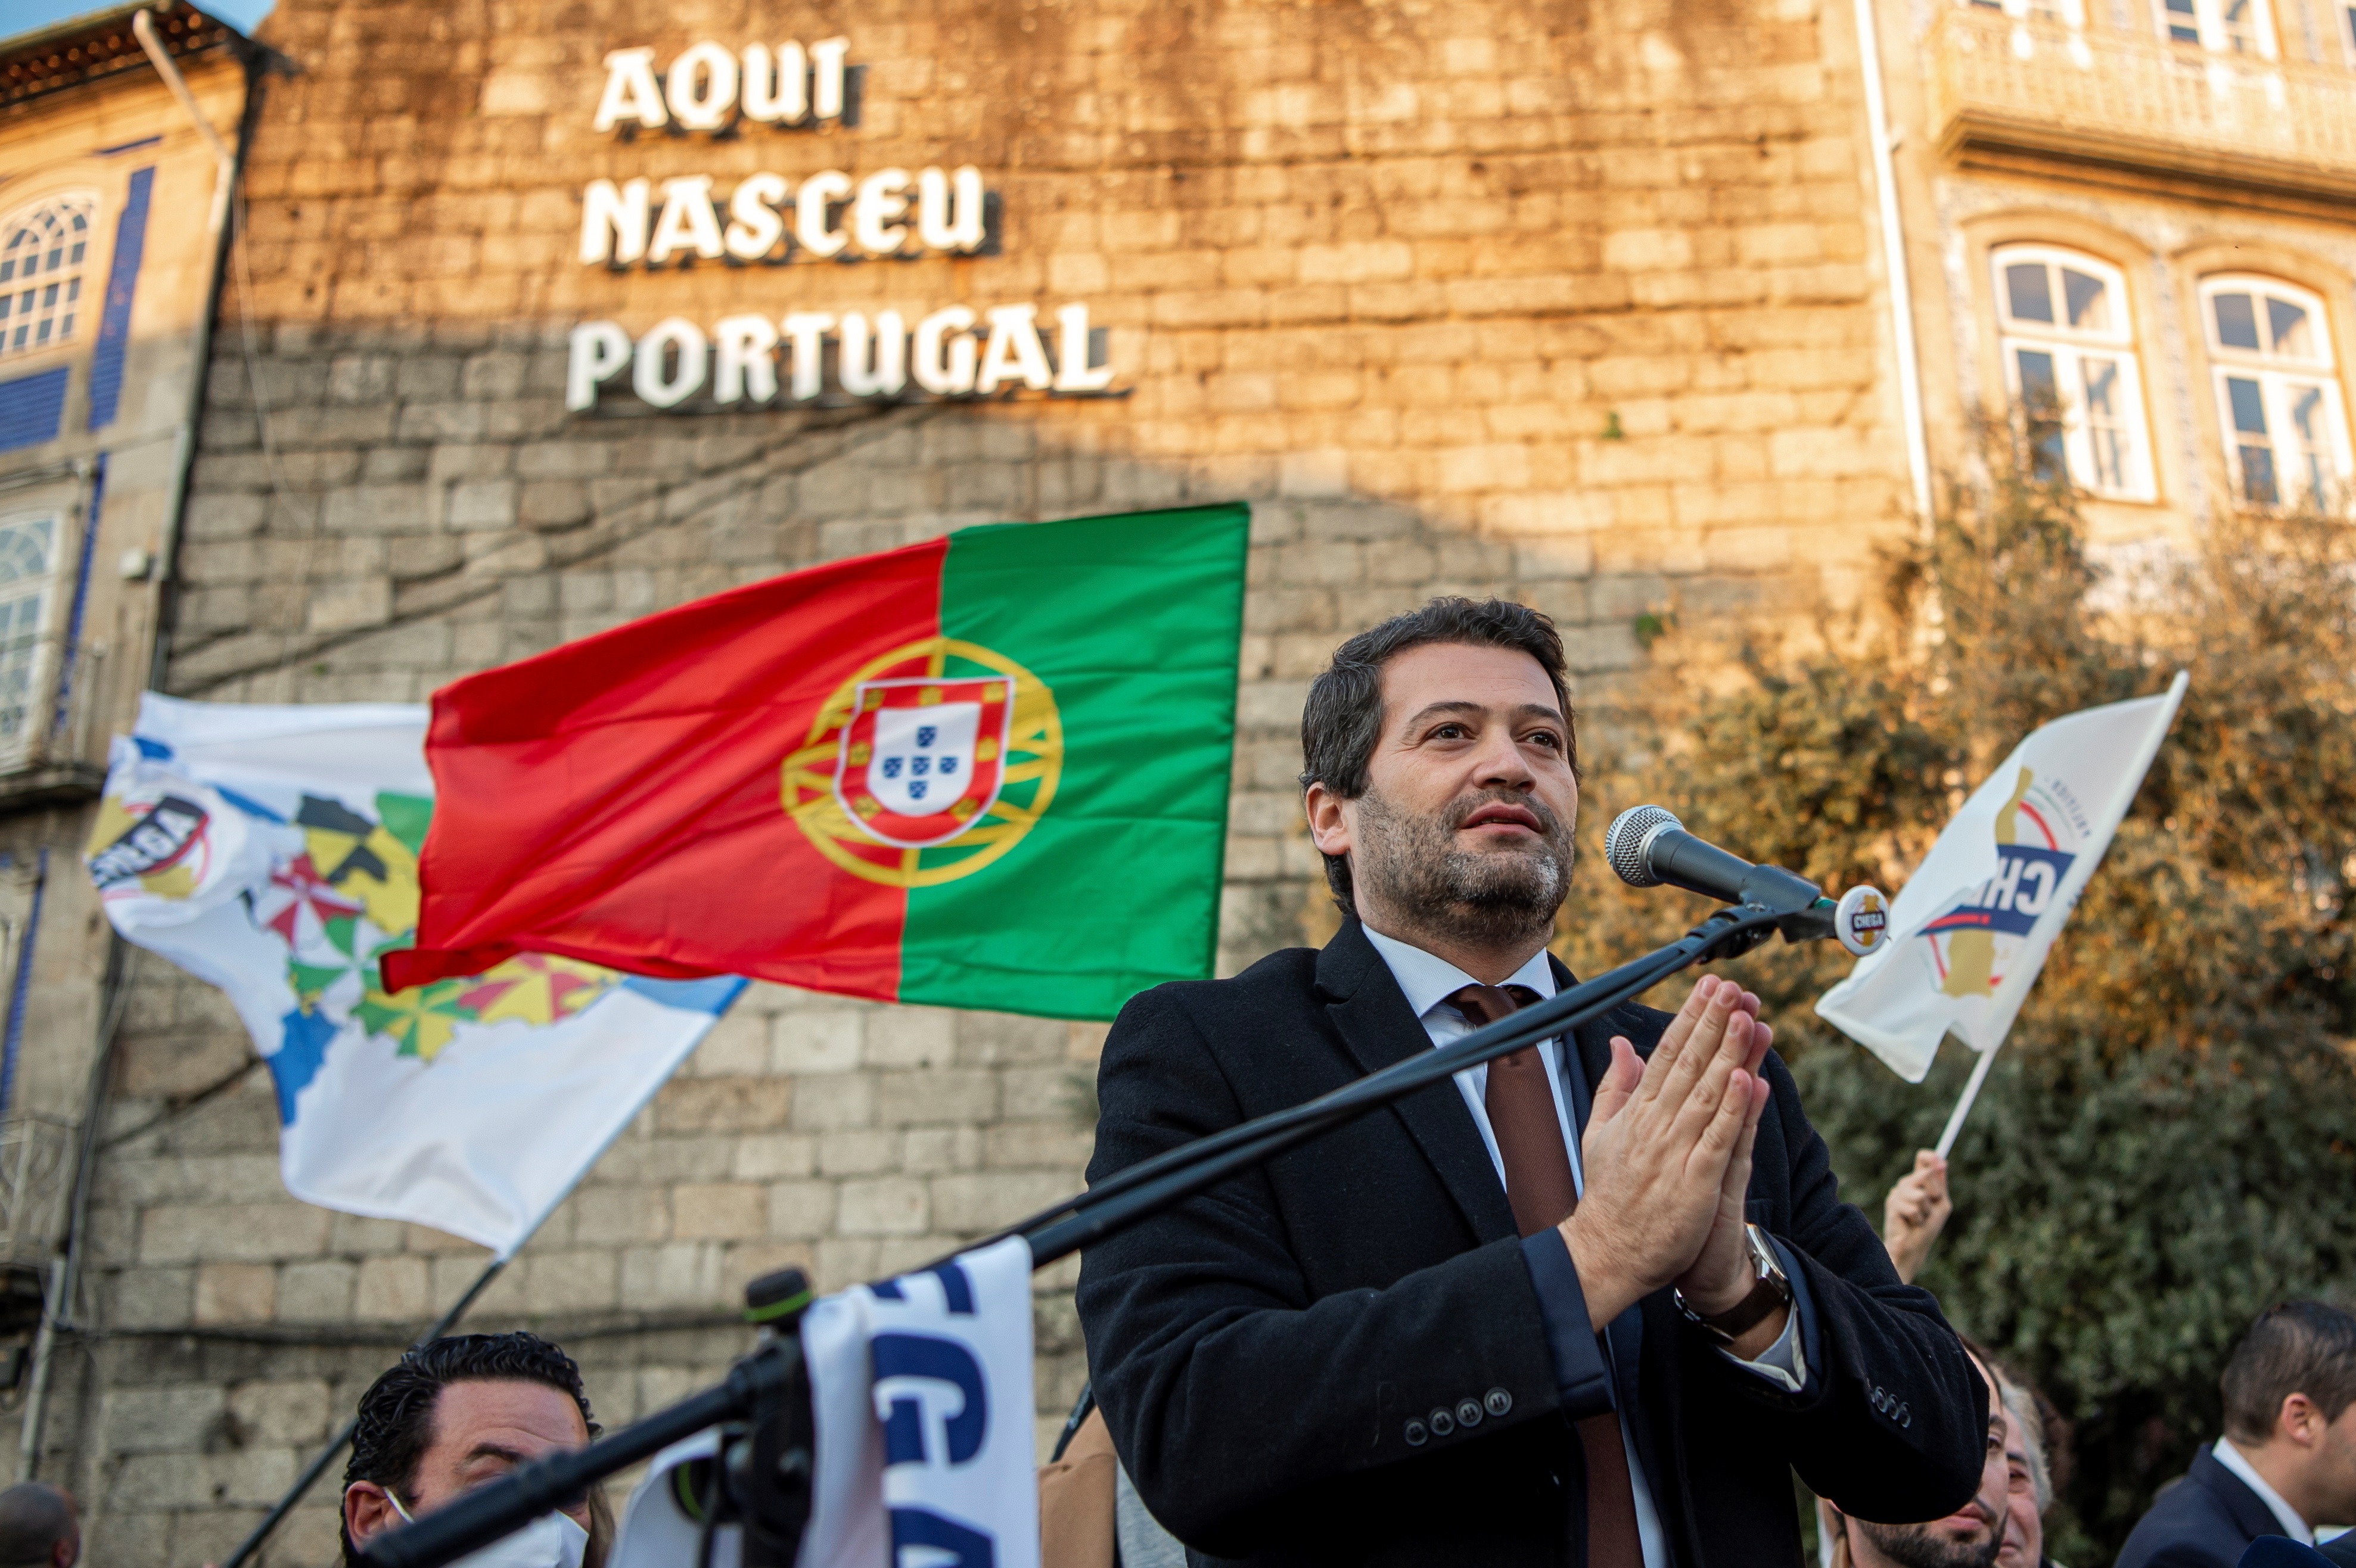 André Ventura, el antisistema que quiere ser ministro en Portugal